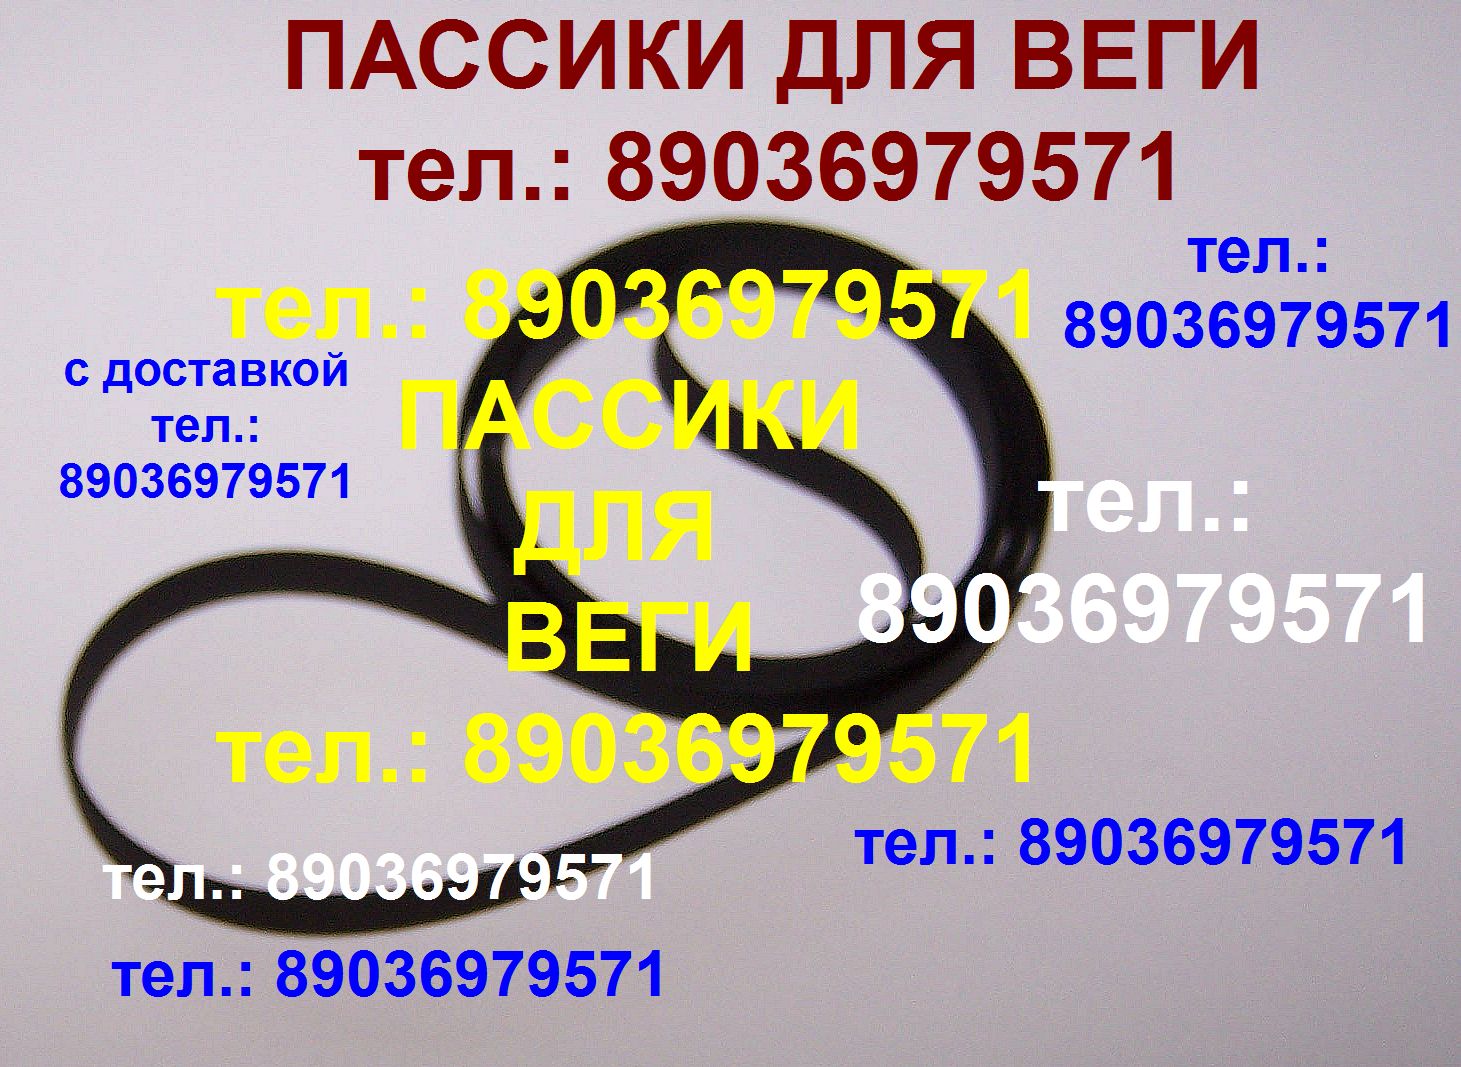 Пассики для Веги ЭП 110 115 117 119 120 122 Унитра G-602 106 108 109 Арктур пасик пассики ремни для вертушки в городе Москва, фото 1, телефон продавца: +7 (903) 697-95-71